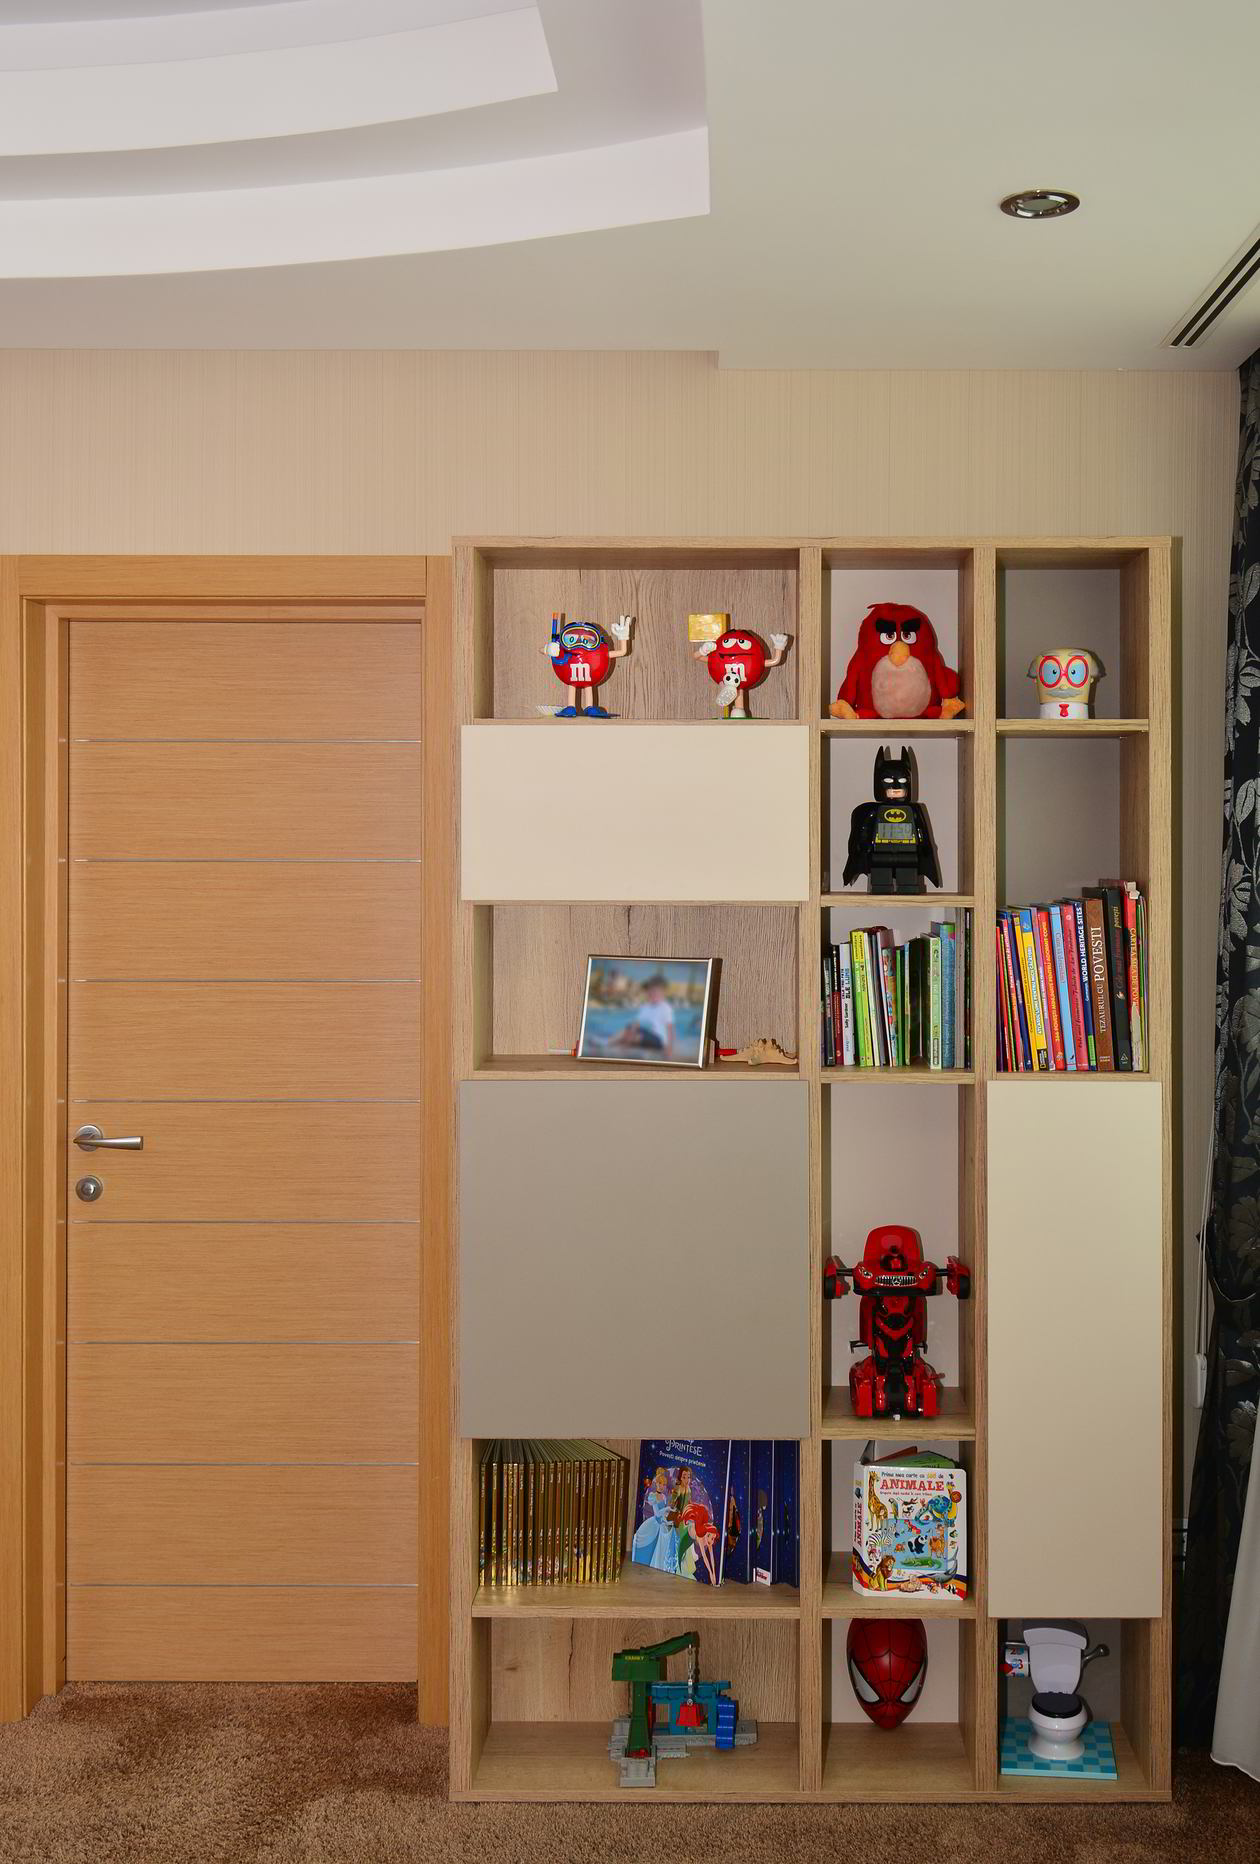 Proiect mobila Camera junior pentru doi copii, cu pat rabatabil vertical, birou integrat, compozitie din module suspendate, biblioteca, 29m², realizat 18 Septembrie 2016 COD.4171